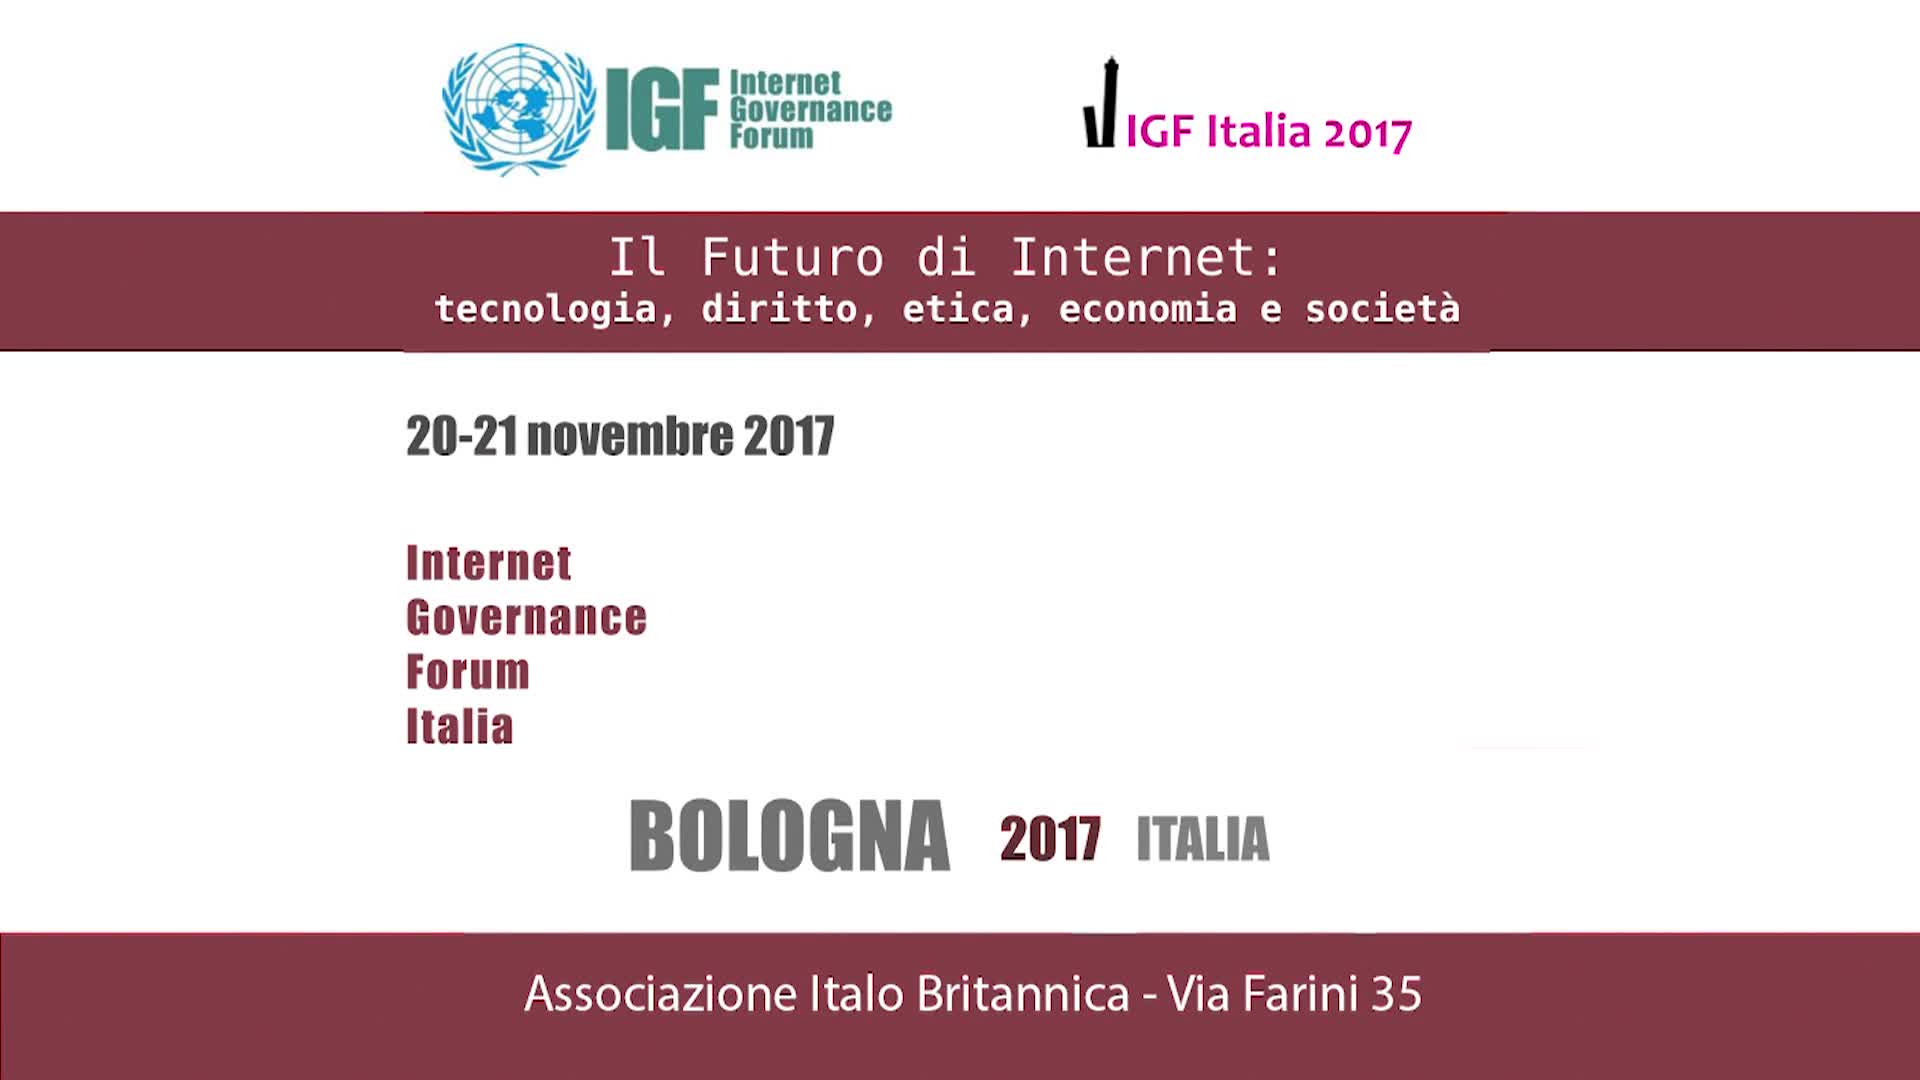 Internet Governance Forum Italia 2017 - Secondaa sessione dei tavoli esterni - immagine